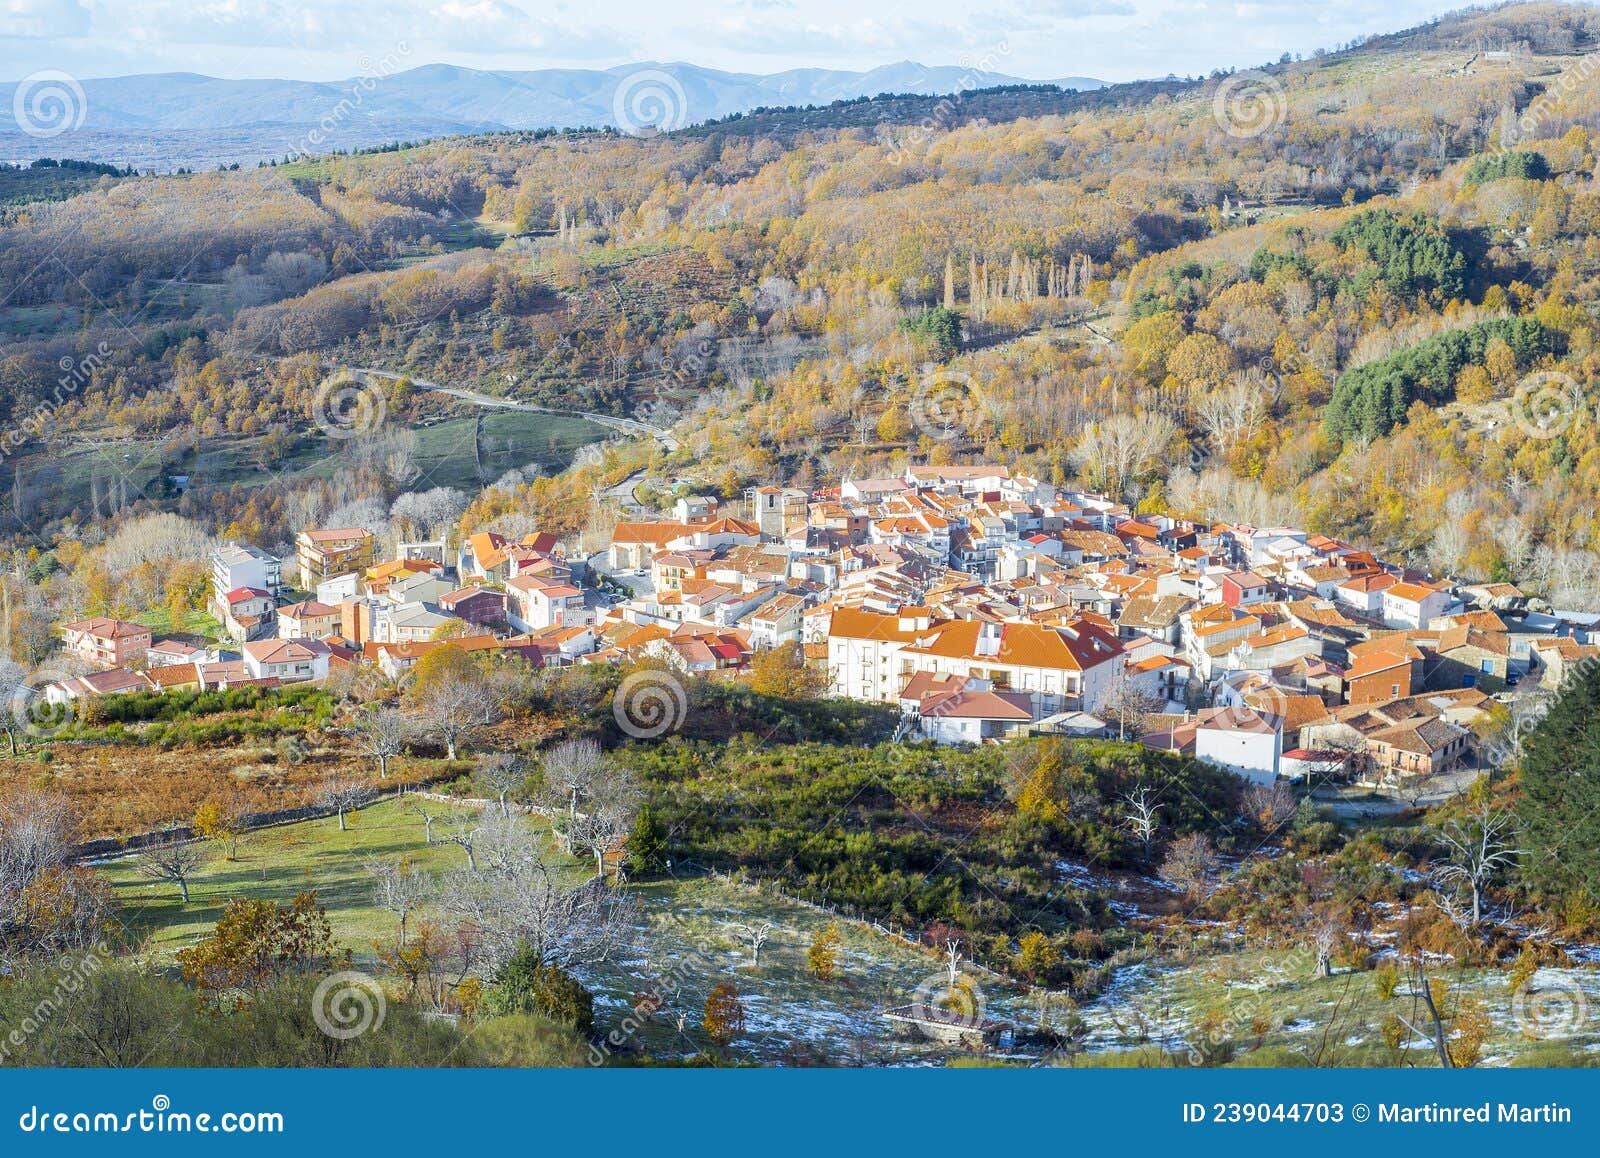 garganta village of the ambroz valley in autumn, extremadura